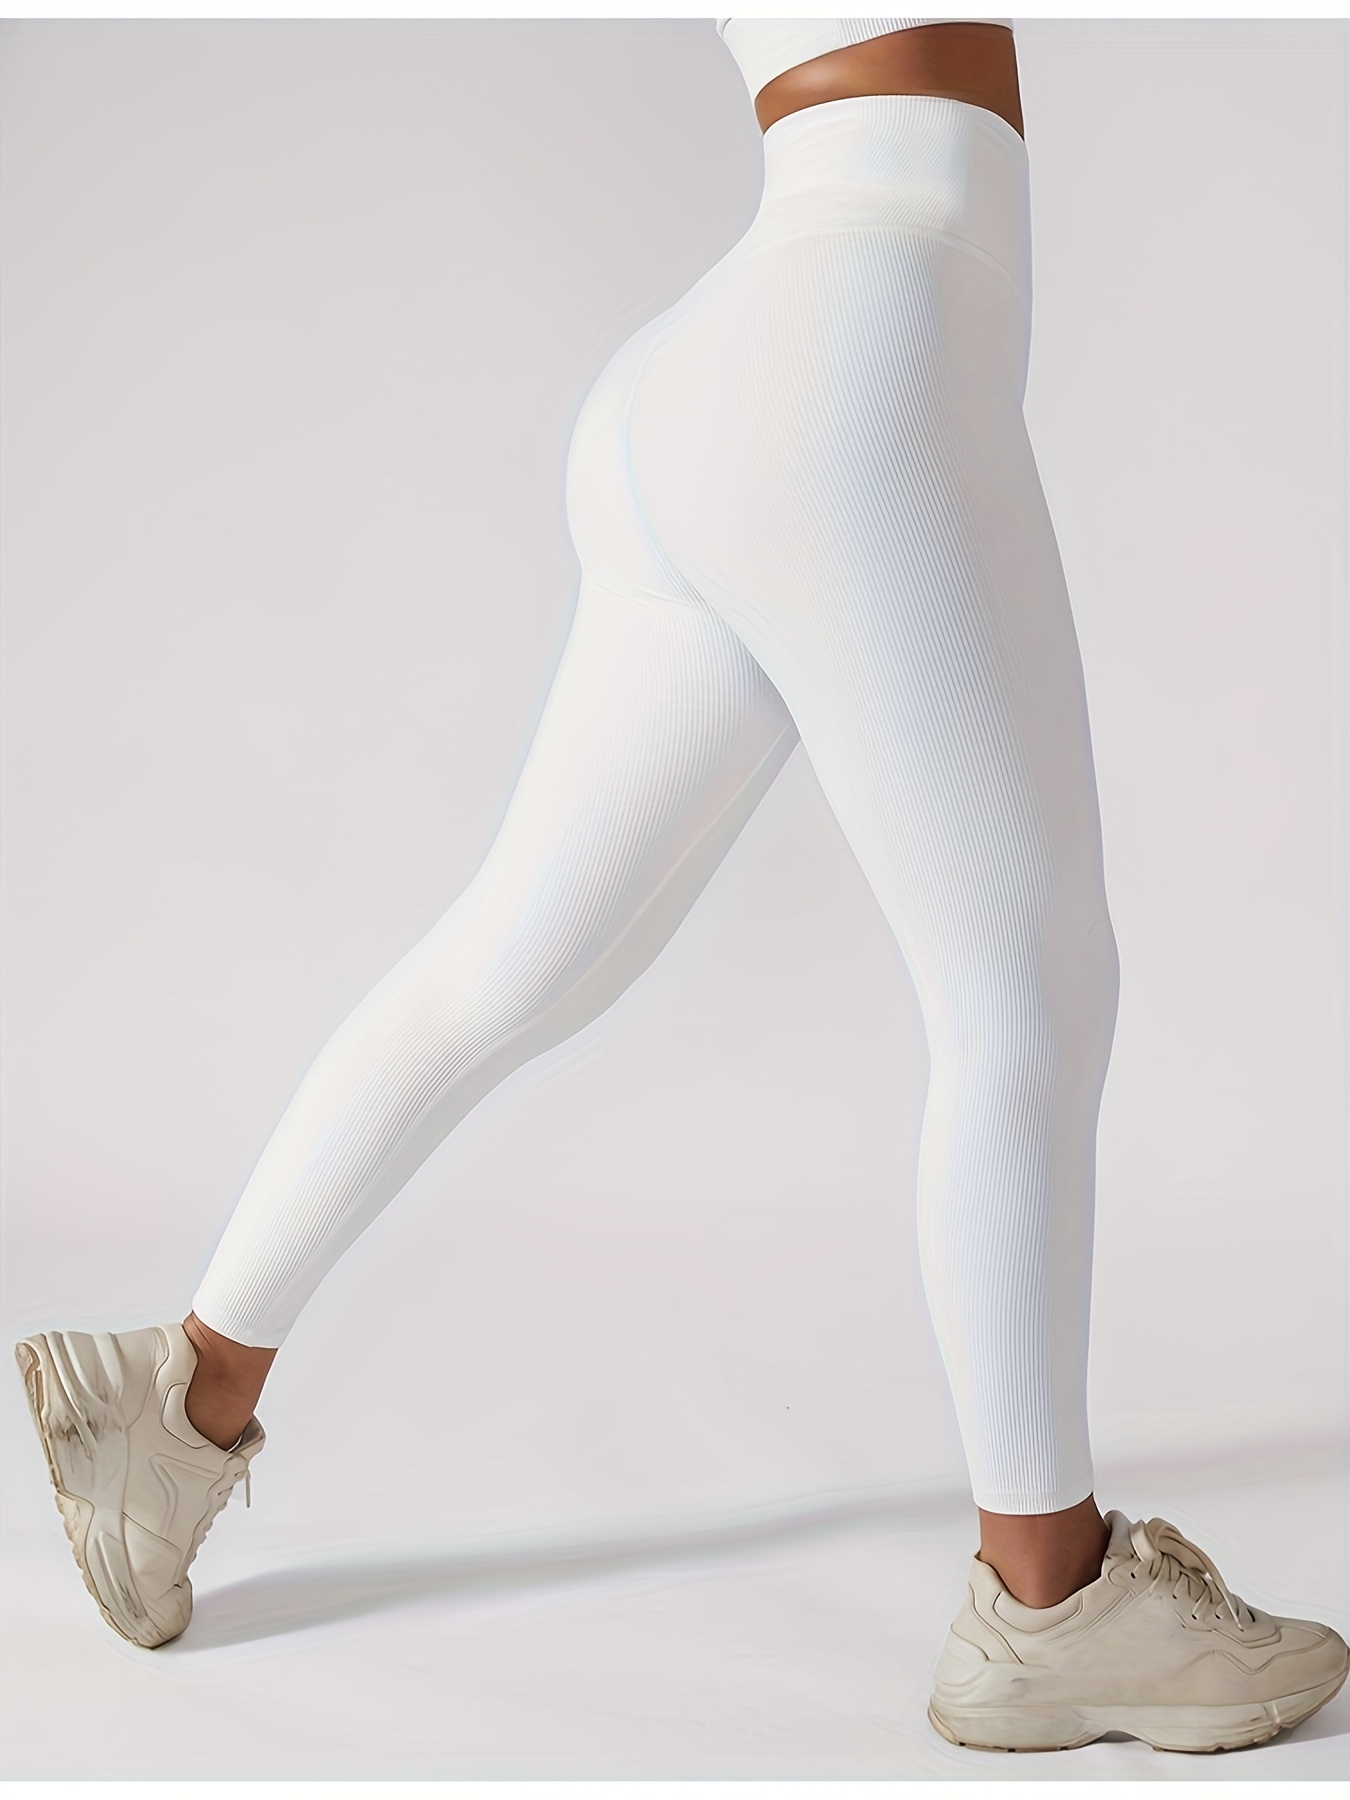 carbon38 White Athletic Leggings for Women